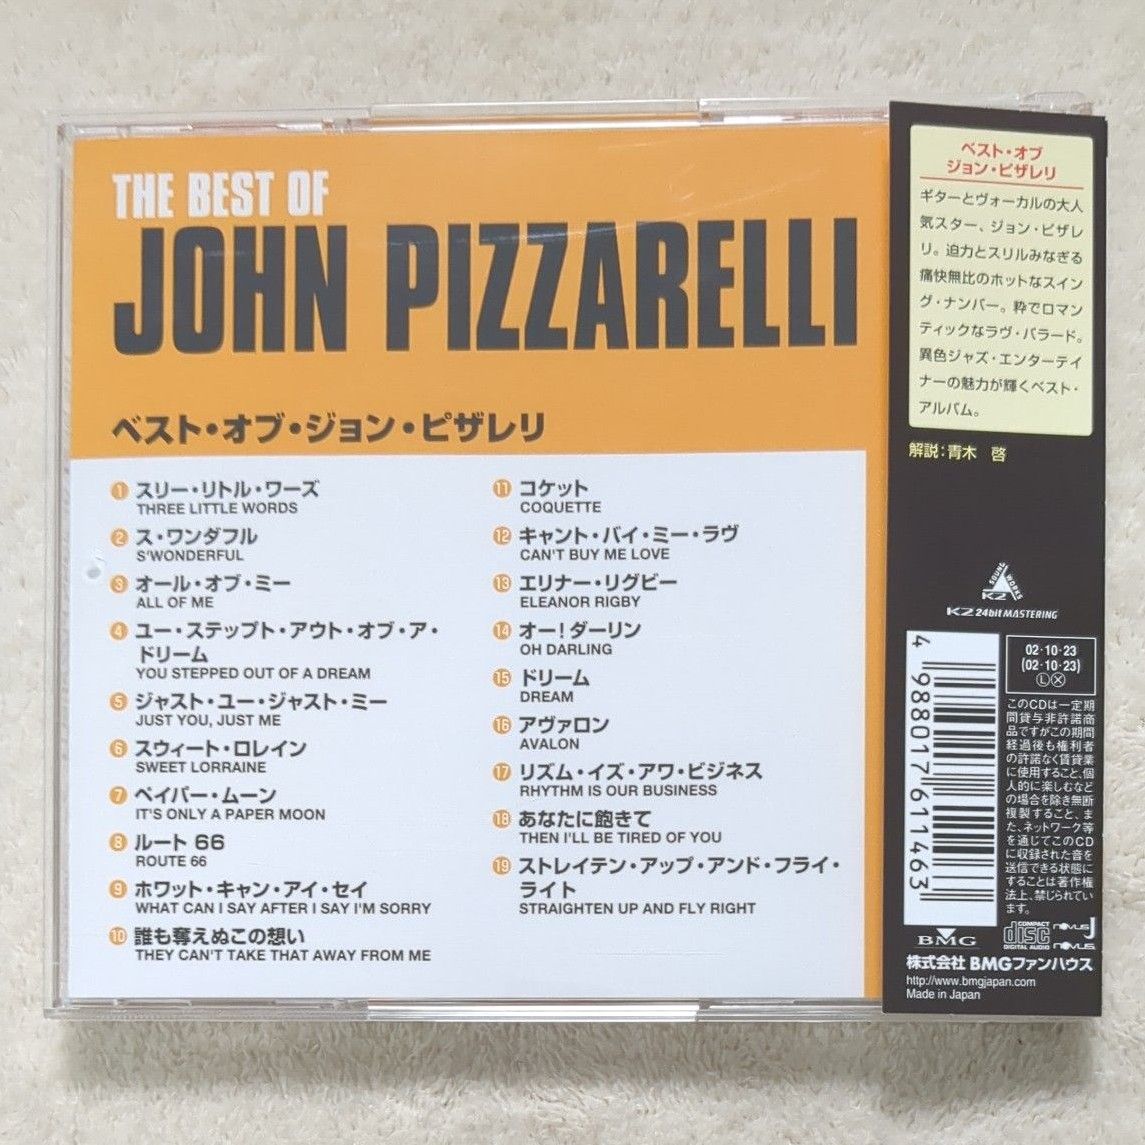 ジョンピザレリ John Pizzarelli "The Best of John Pizzarelli" 日本企画リマスター版